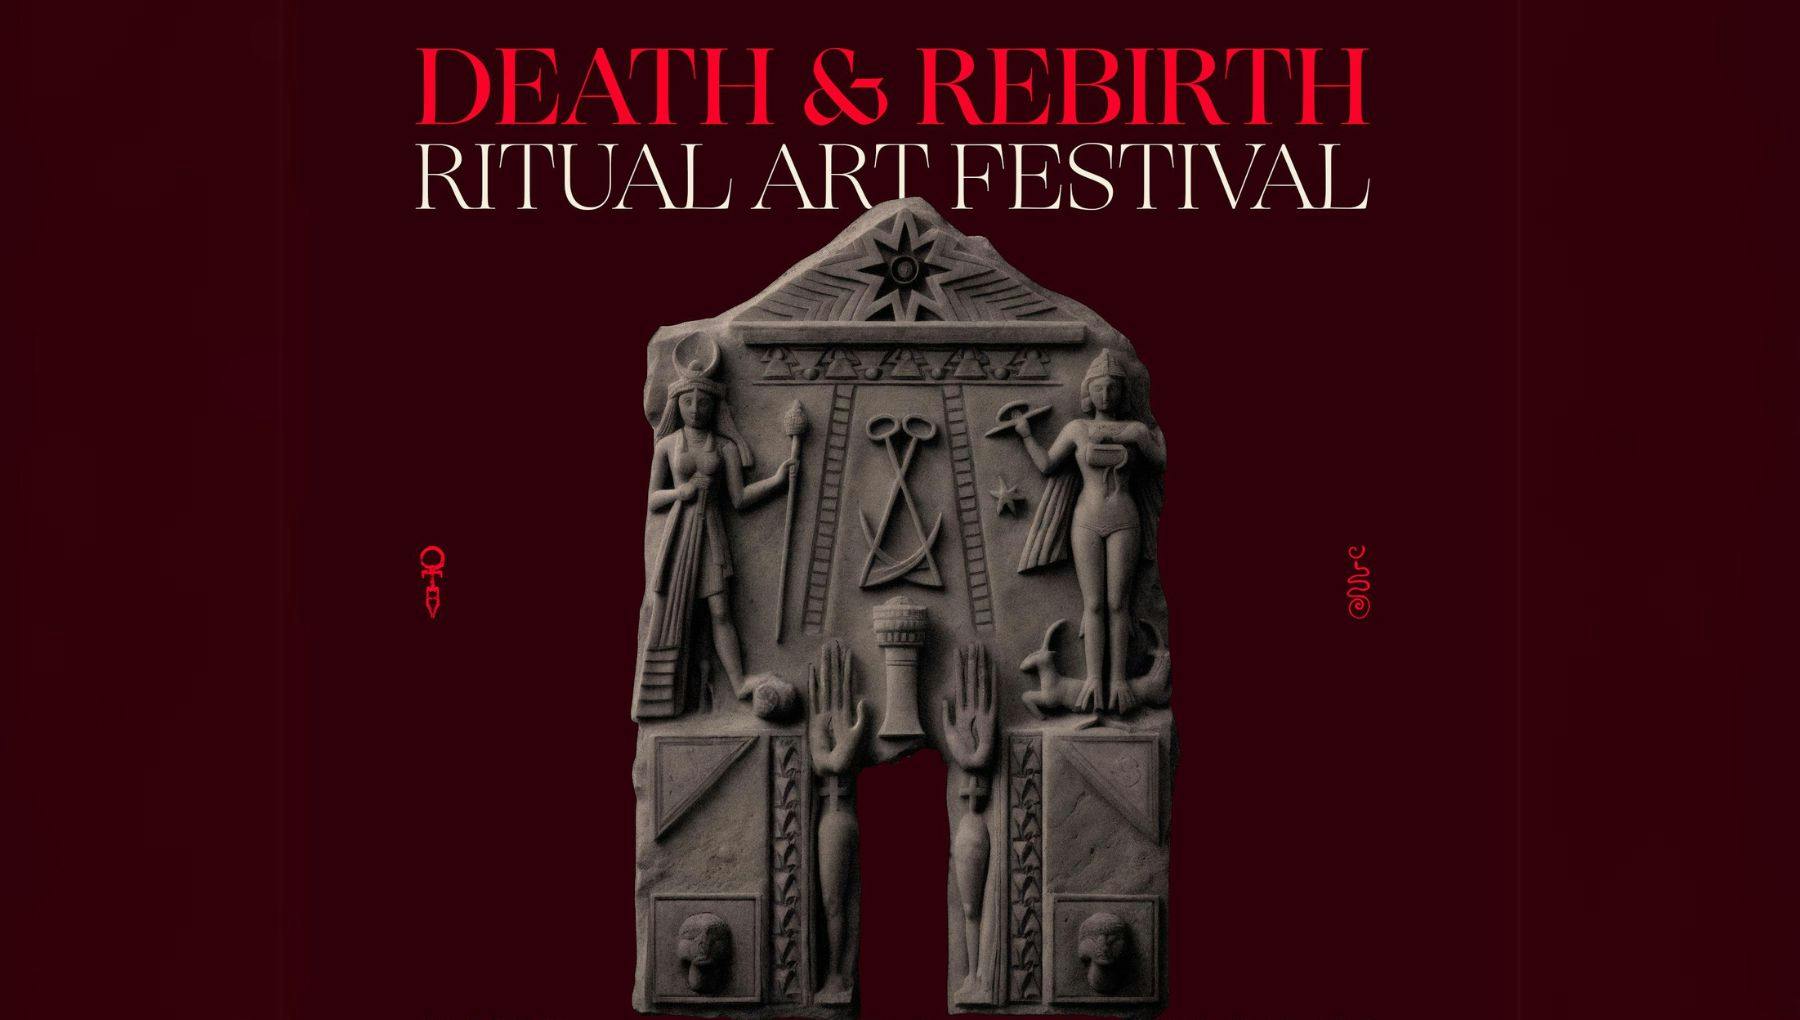 Death & Rebirth Ritual Art Festival